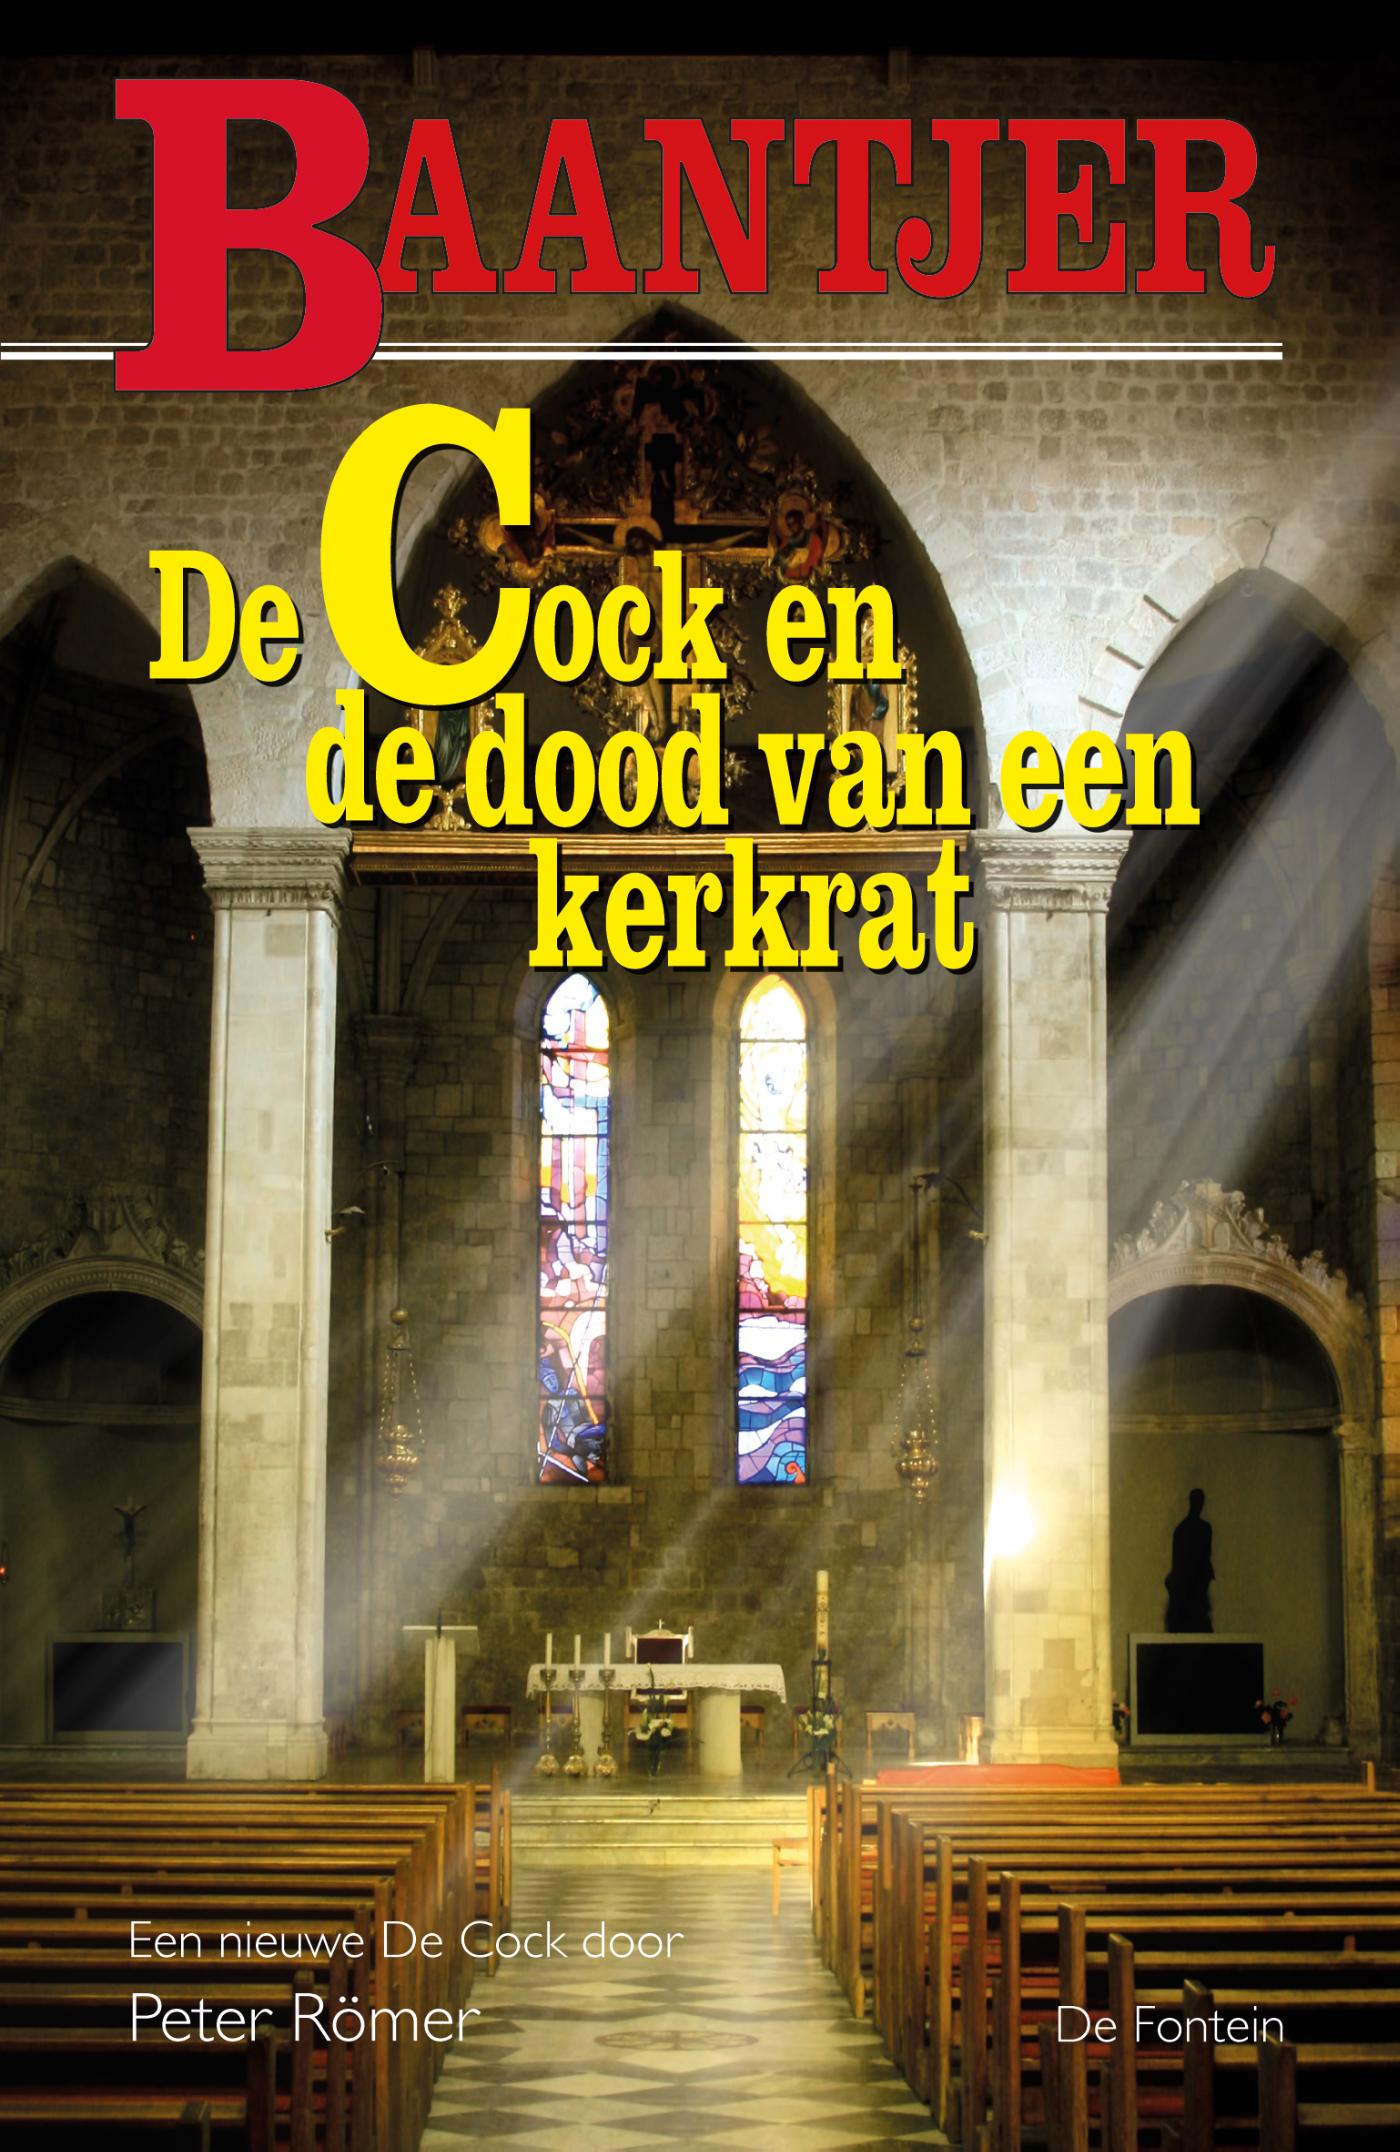 De Cock en de dood van een kerkrat